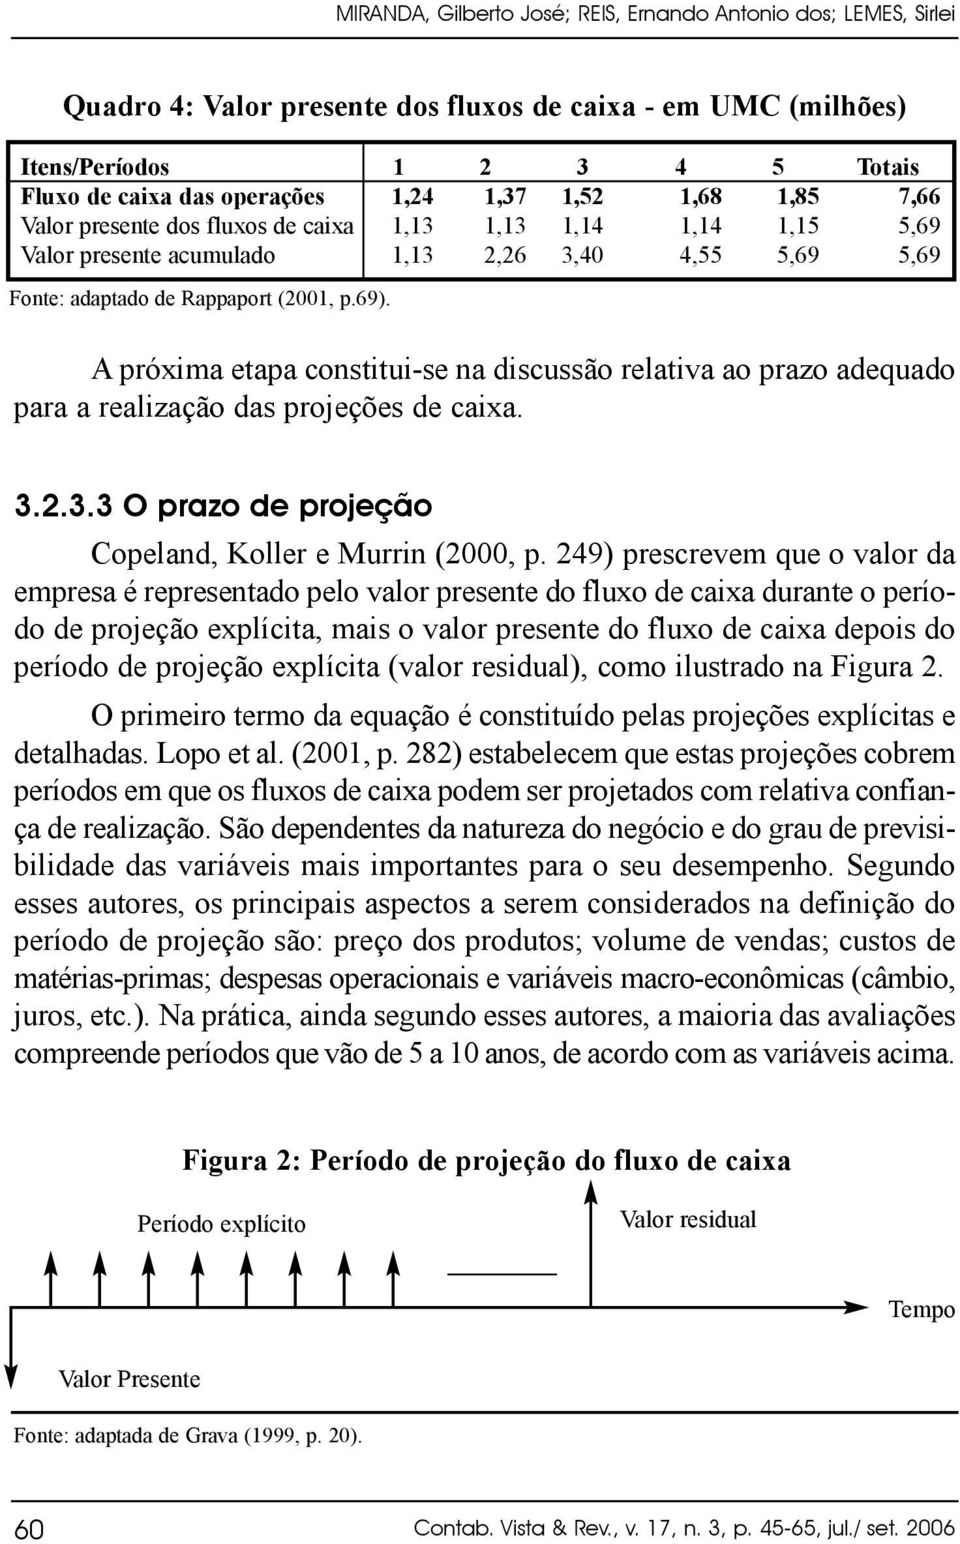 A próxima etapa constitui-se na discussão relativa ao prazo adequado para a realização das projeções de caixa. 3.2.3.3 O prazo de projeção Copeland, Koller e Murrin (2000, p.